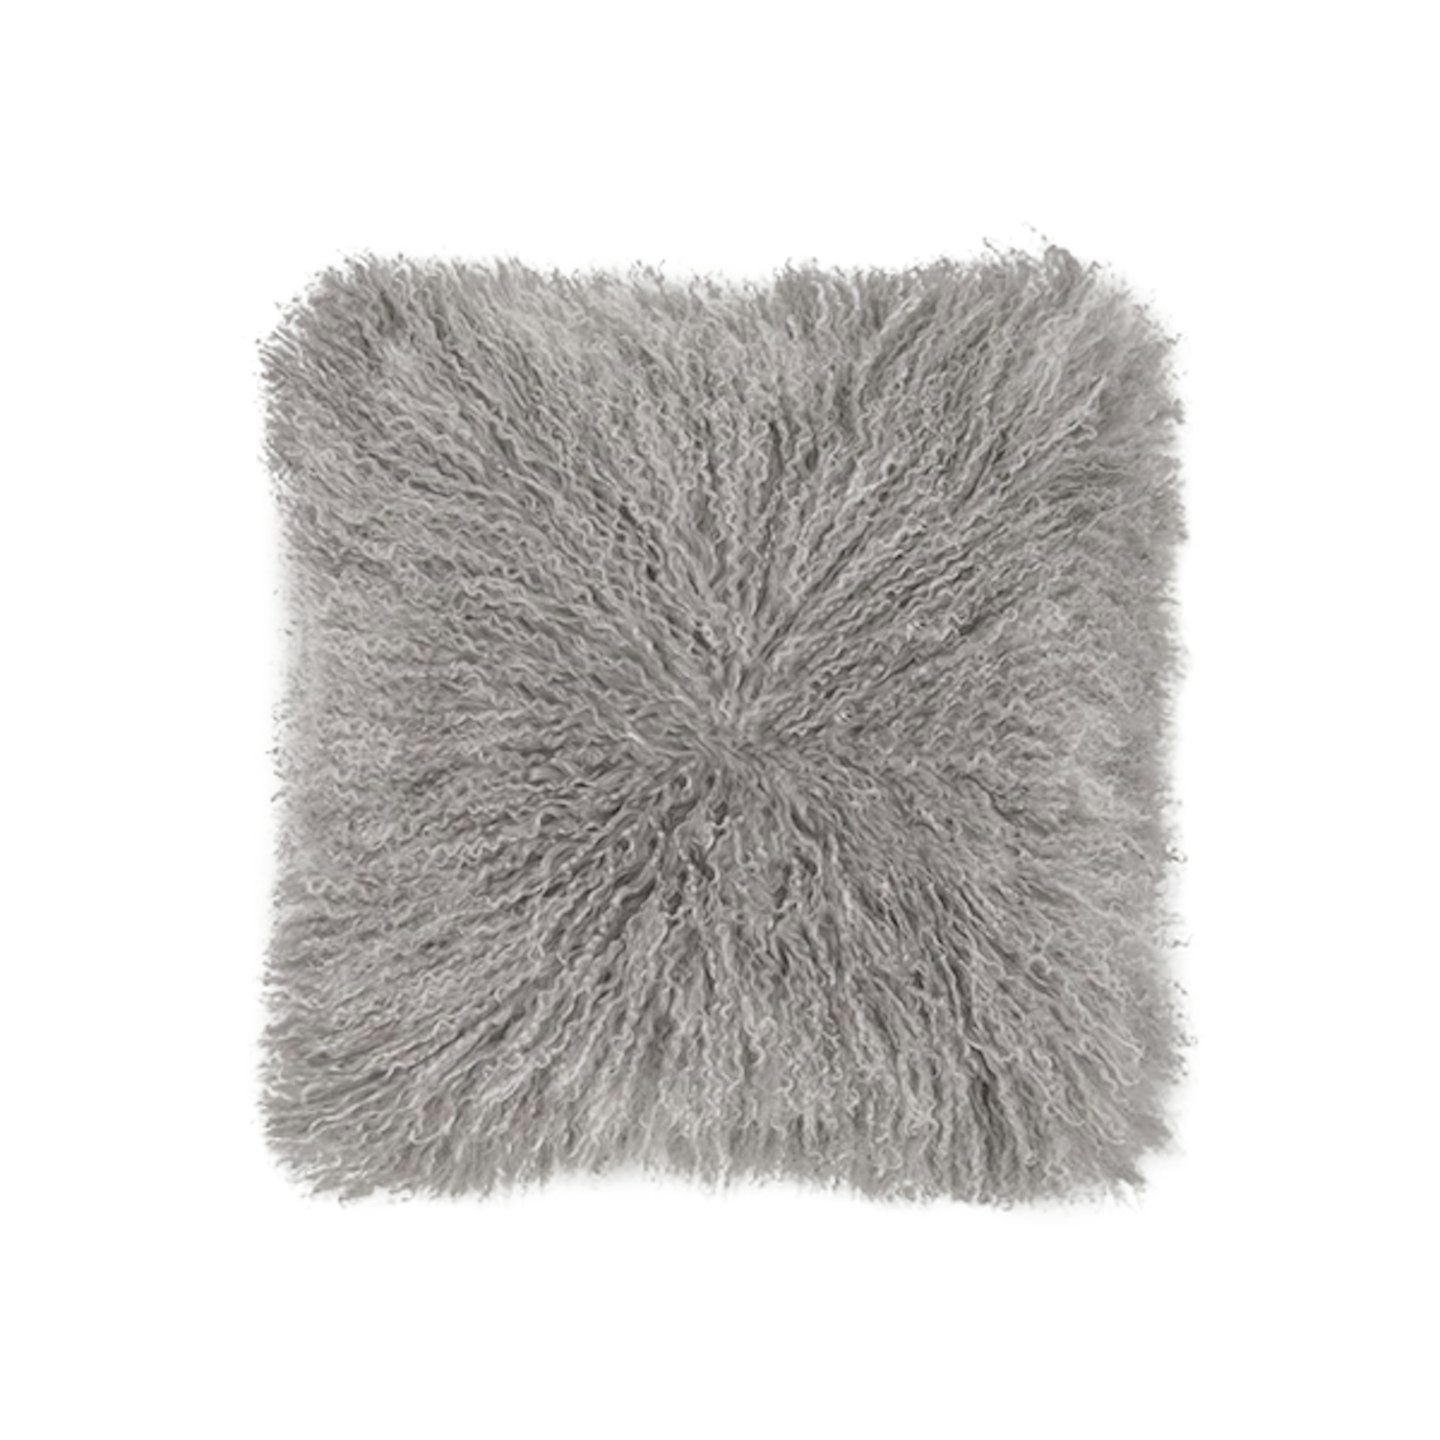 Haddie Mongolian Fur Cushion